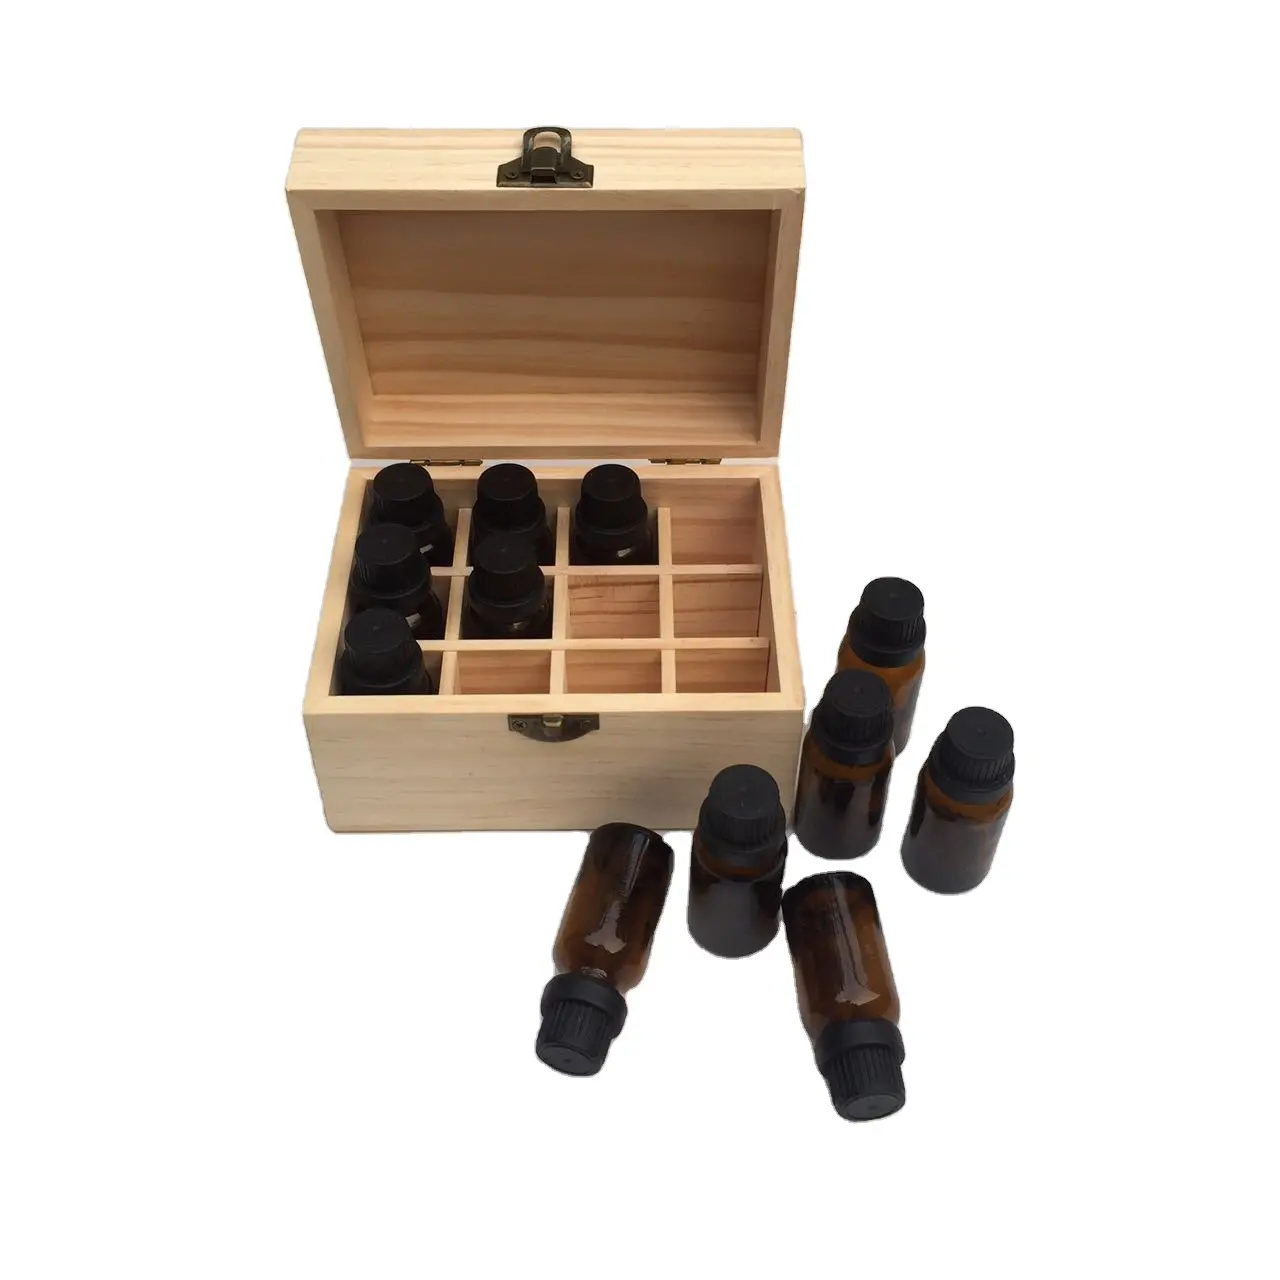 Caixa para armazenamento de óleo essencial, caixa para armazenamento de óleo essencial personalizada, madeira e caixas de bambu